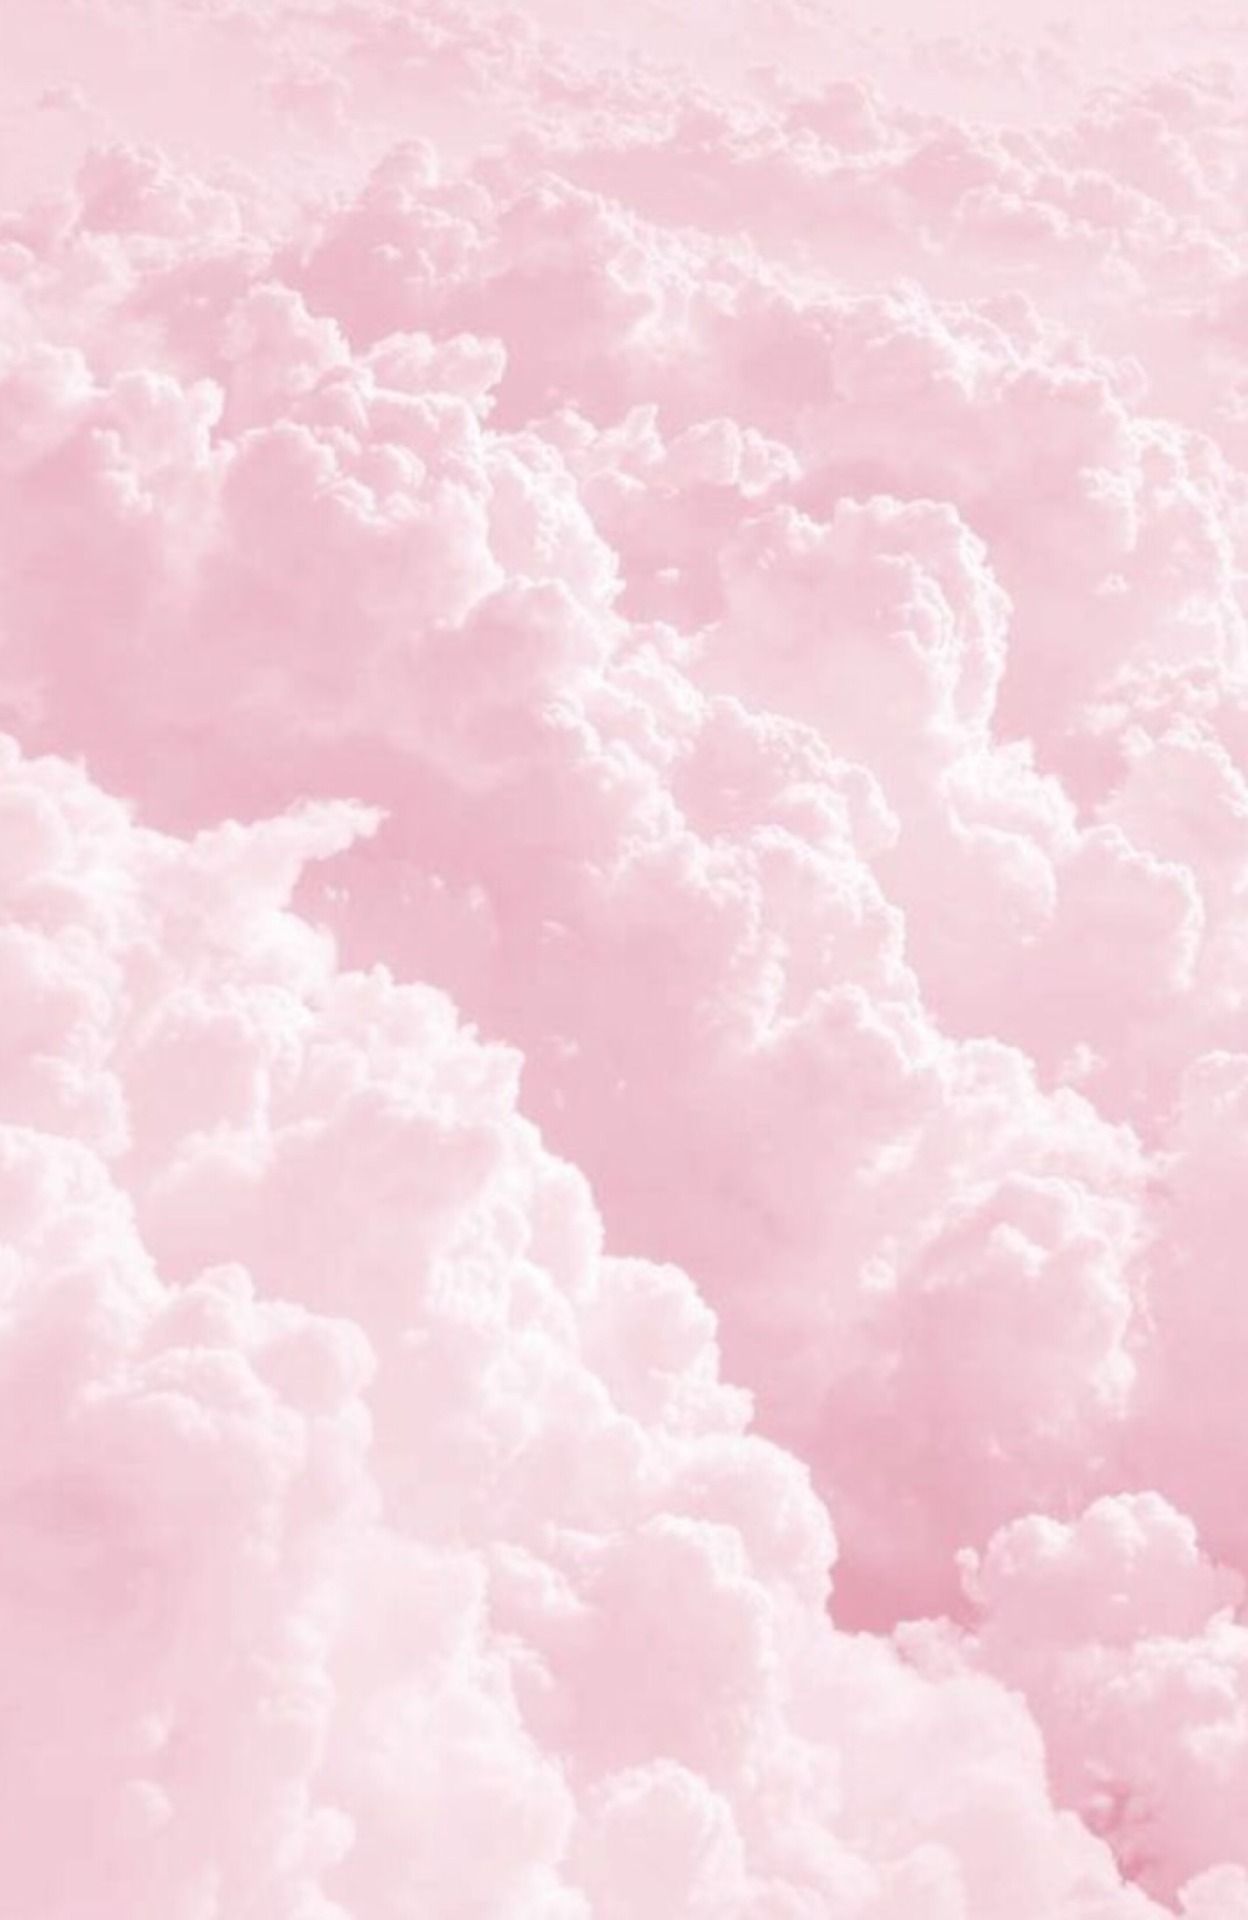 Pink Aesthetic Background - KibrisPDR